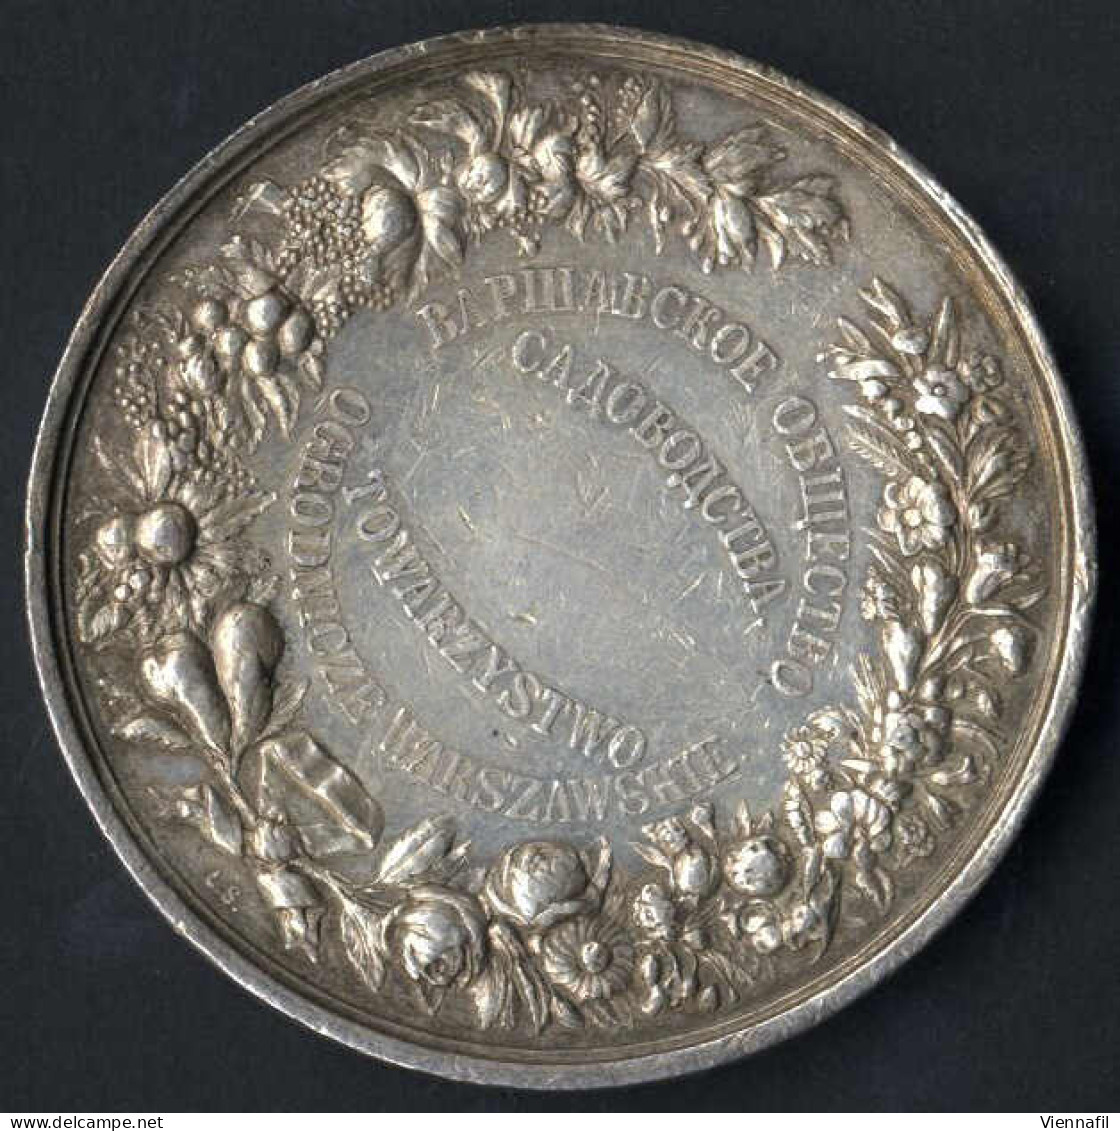 Medaille Der Warschauer Gartenbaugenossenschaft, Gartenbauausstellung Warschau 1895, Silbermedaille Von L. Steinman, Gep - Poland